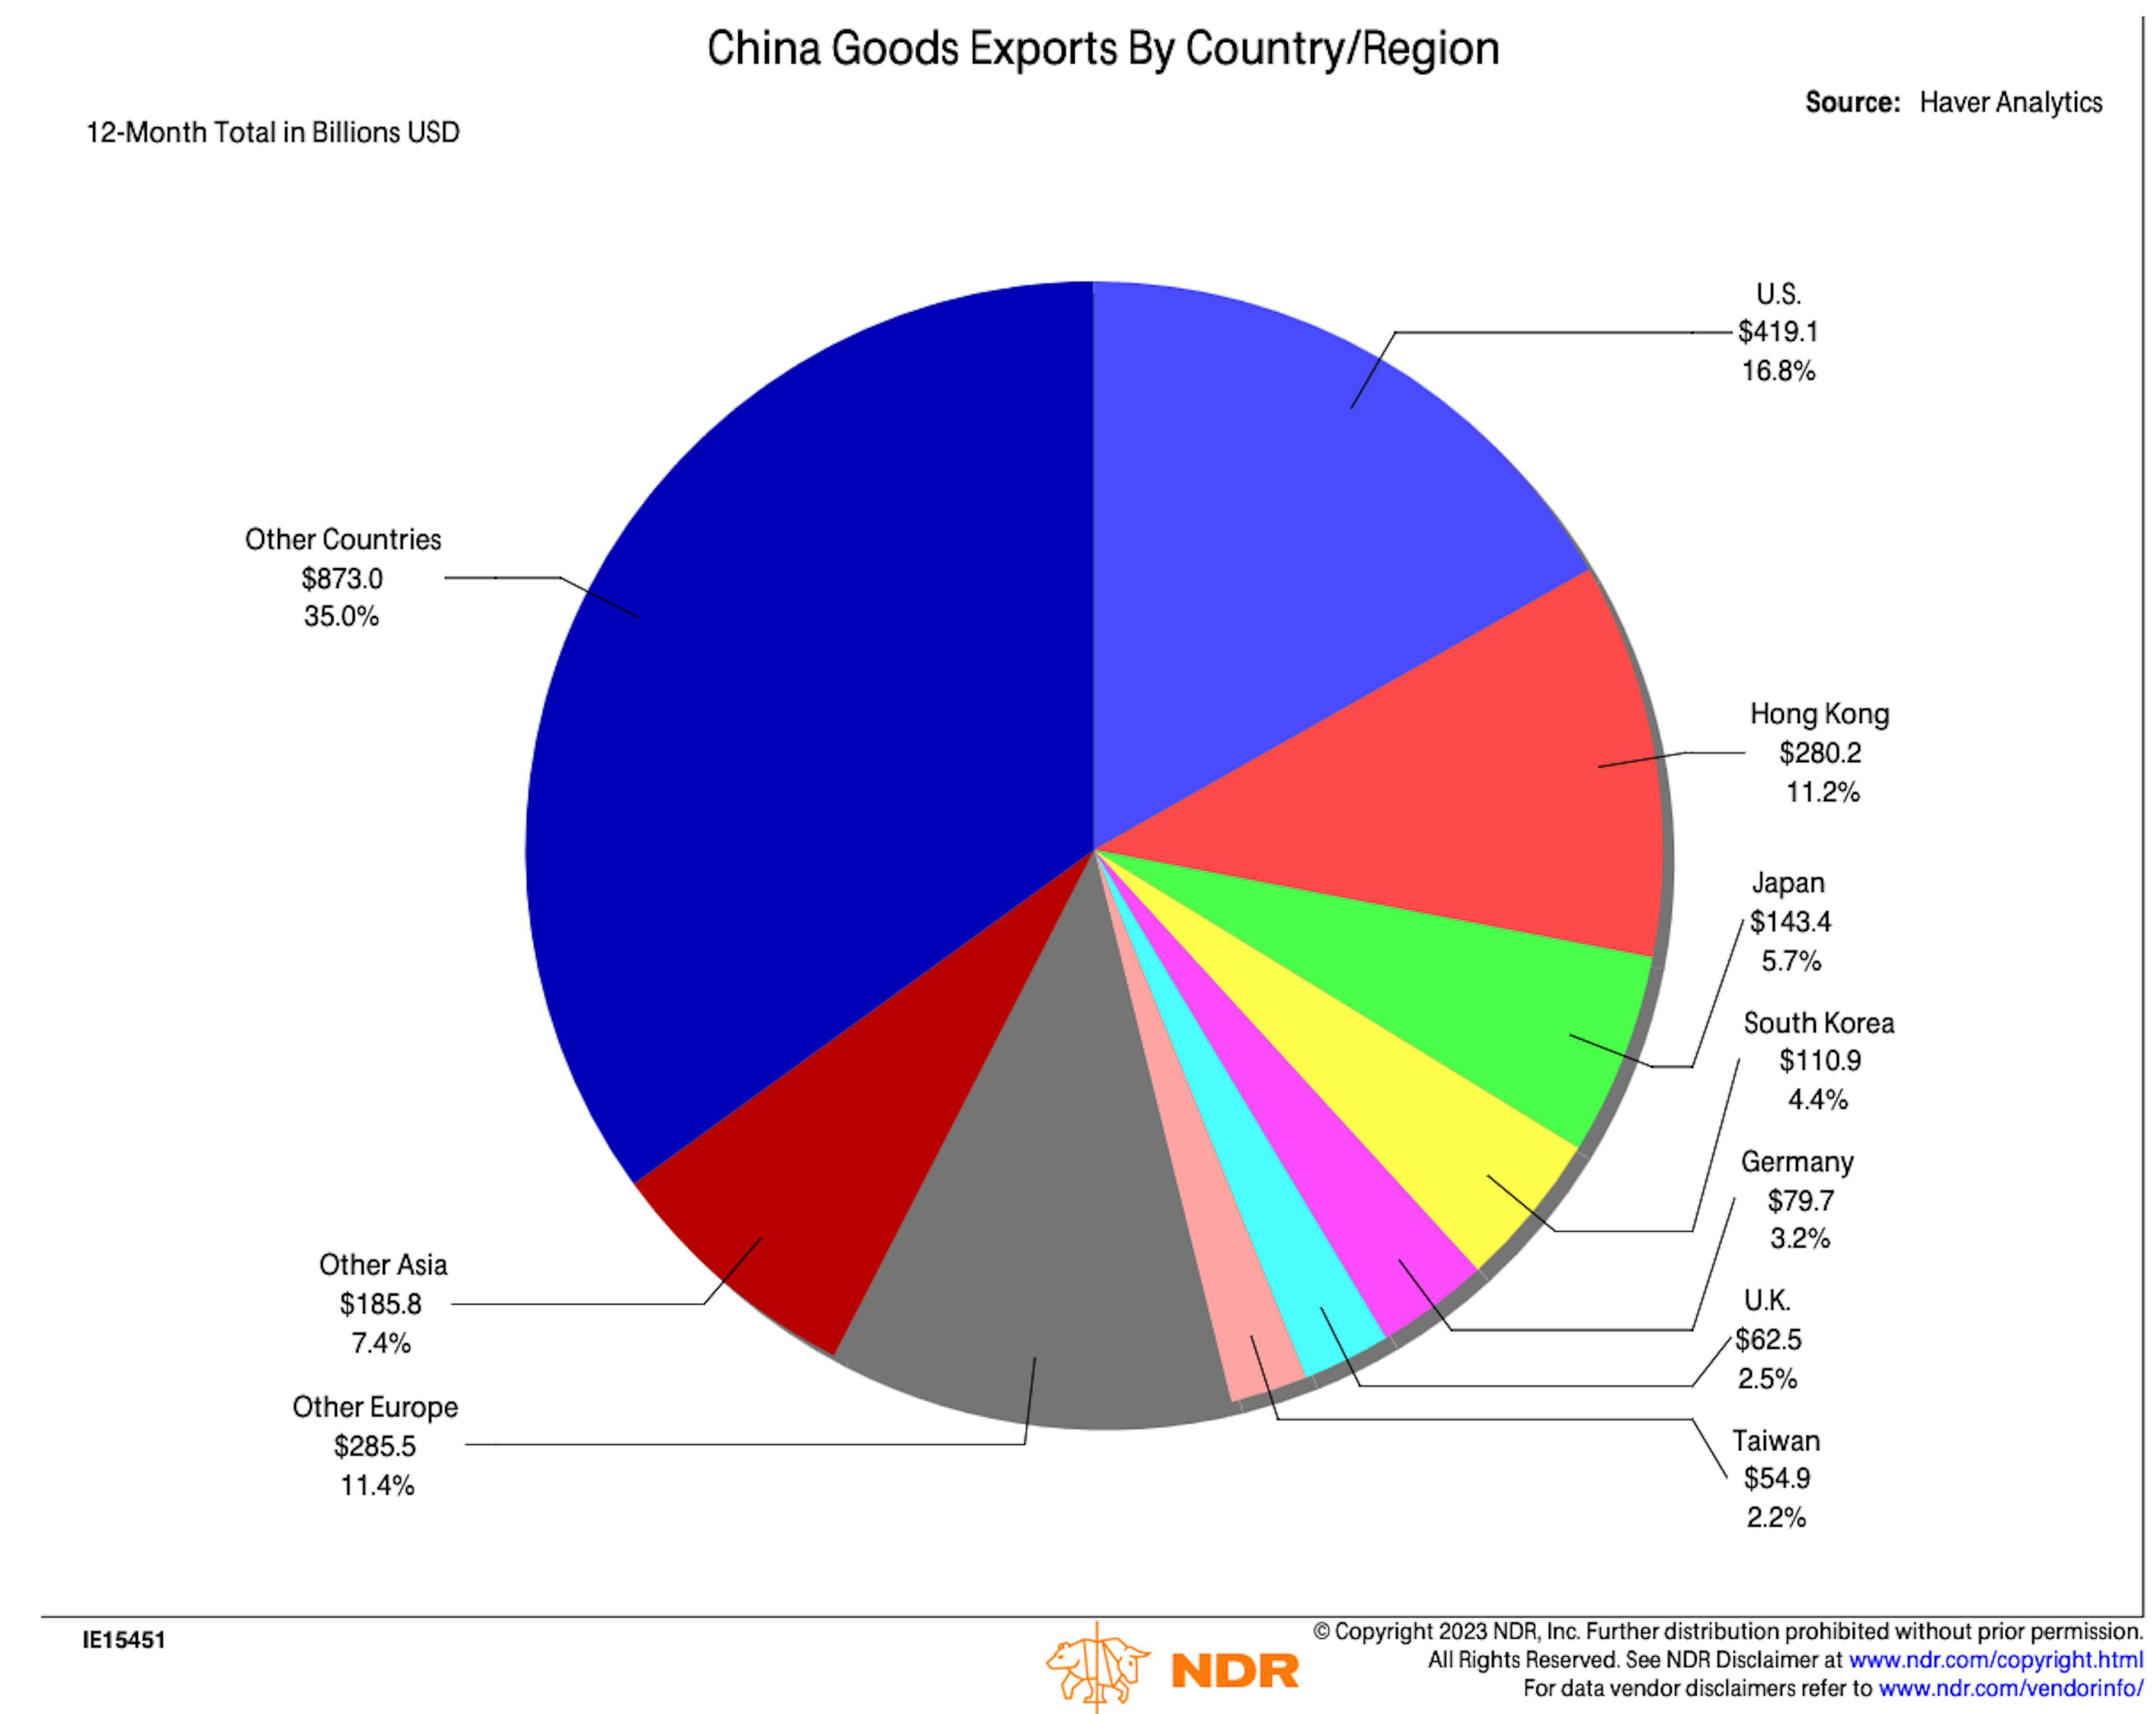 अमेरिका + यूरोप संयुक्त रूप से चीनी निर्यात का सबसे बड़ा गंतव्य है।